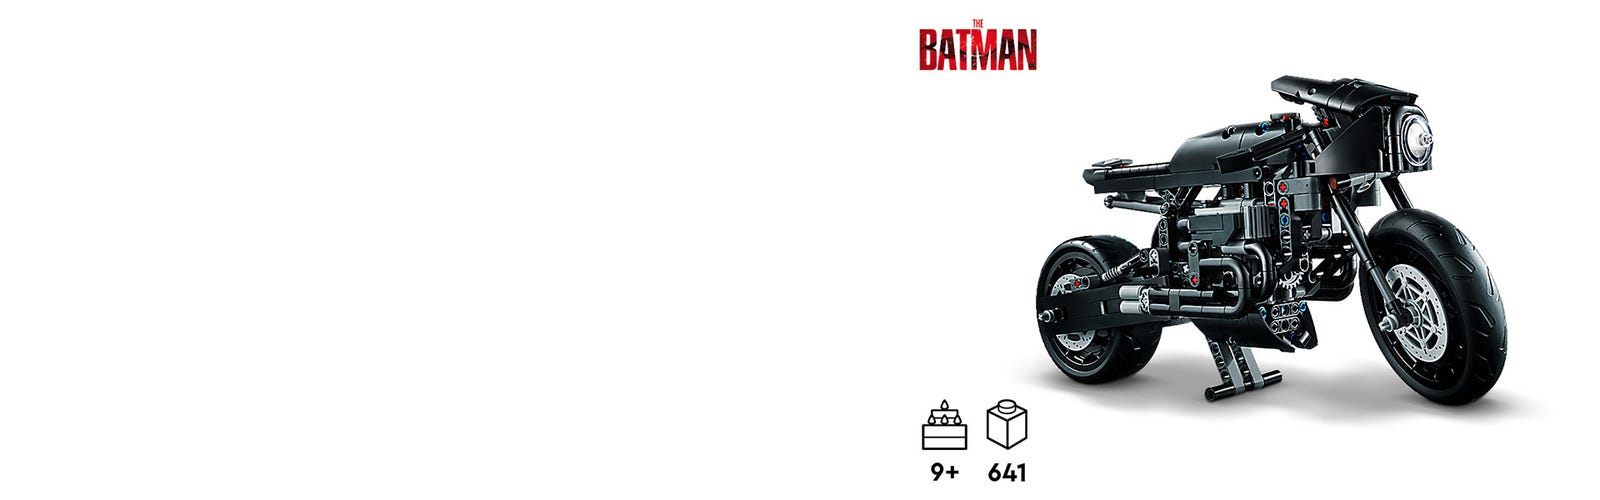 LEGO 42155 Technic Le Batcycle de Batman, Jouet de Moto à